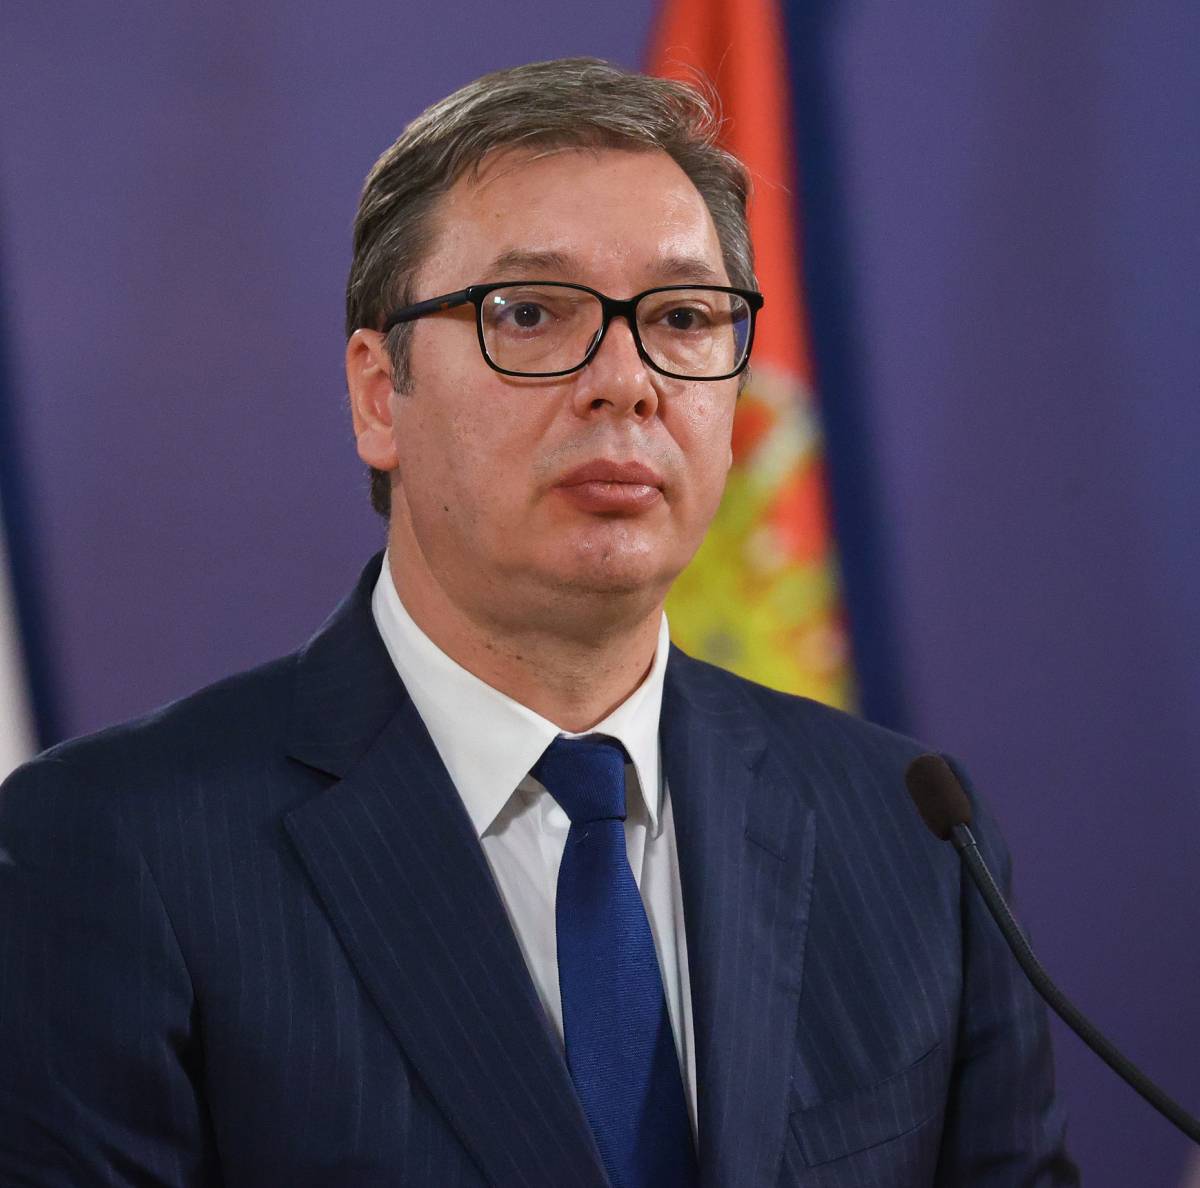 Вучич: Слабая Сербия единственная не ввела санкции против РФ в Европе